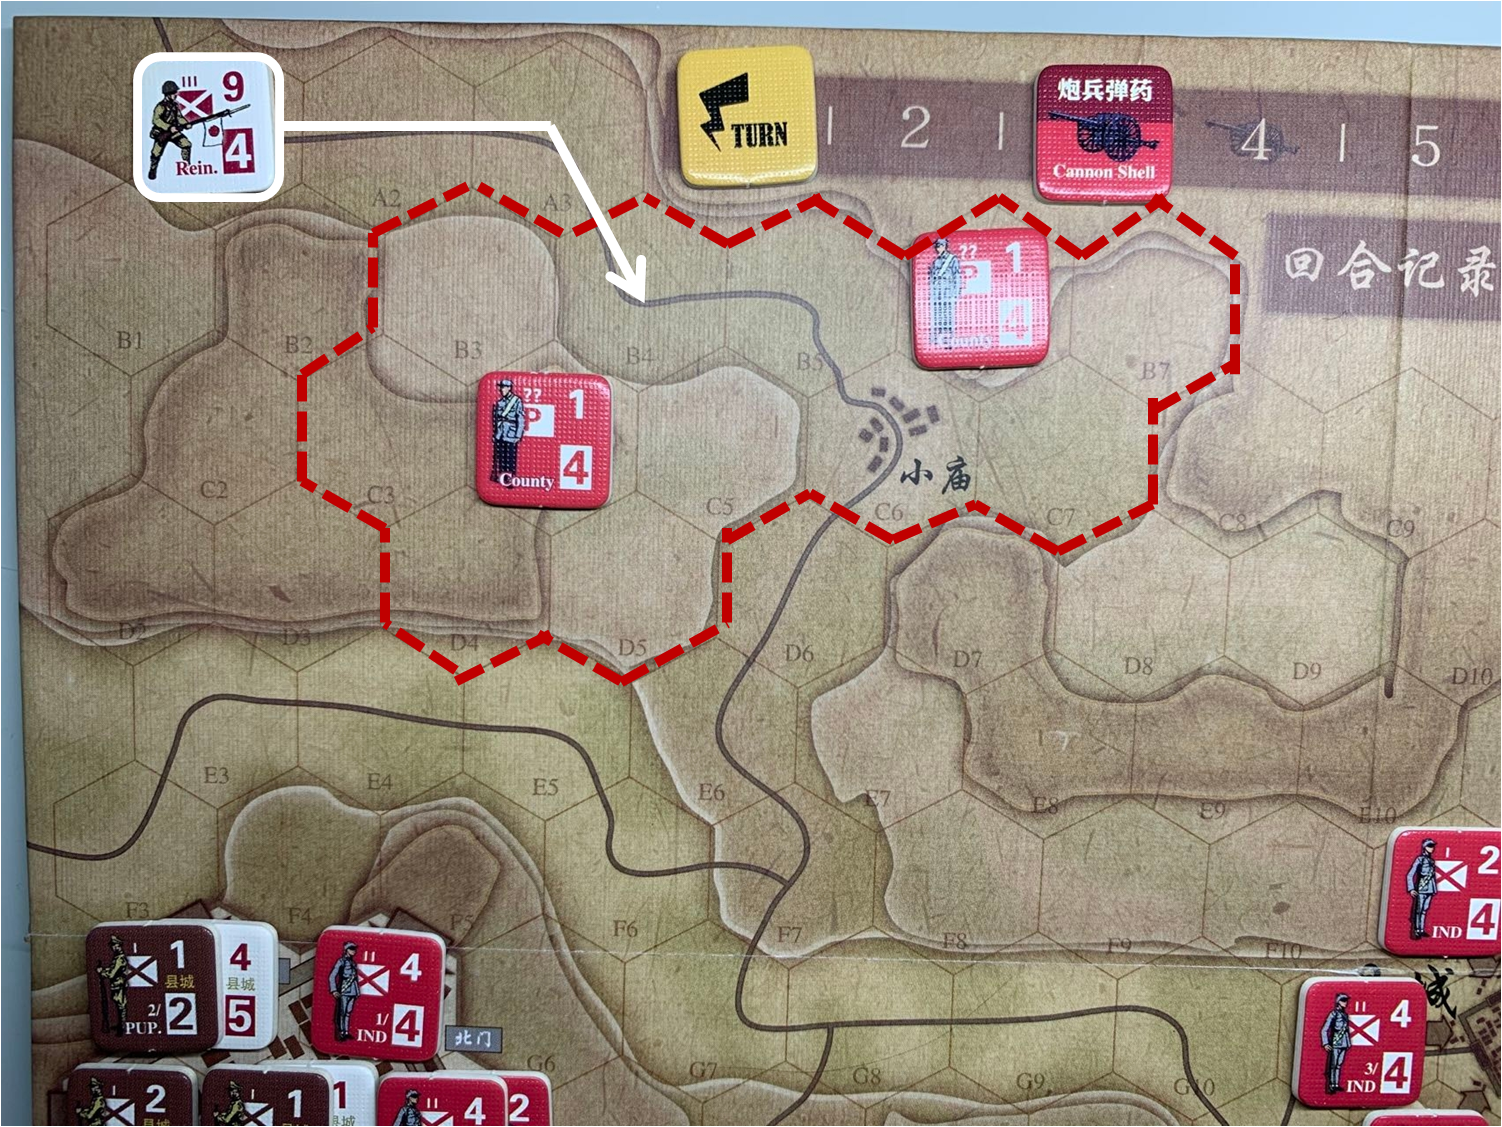 第一回合山泉方向（A1）日军增援部队对于移动命令1的执行计划